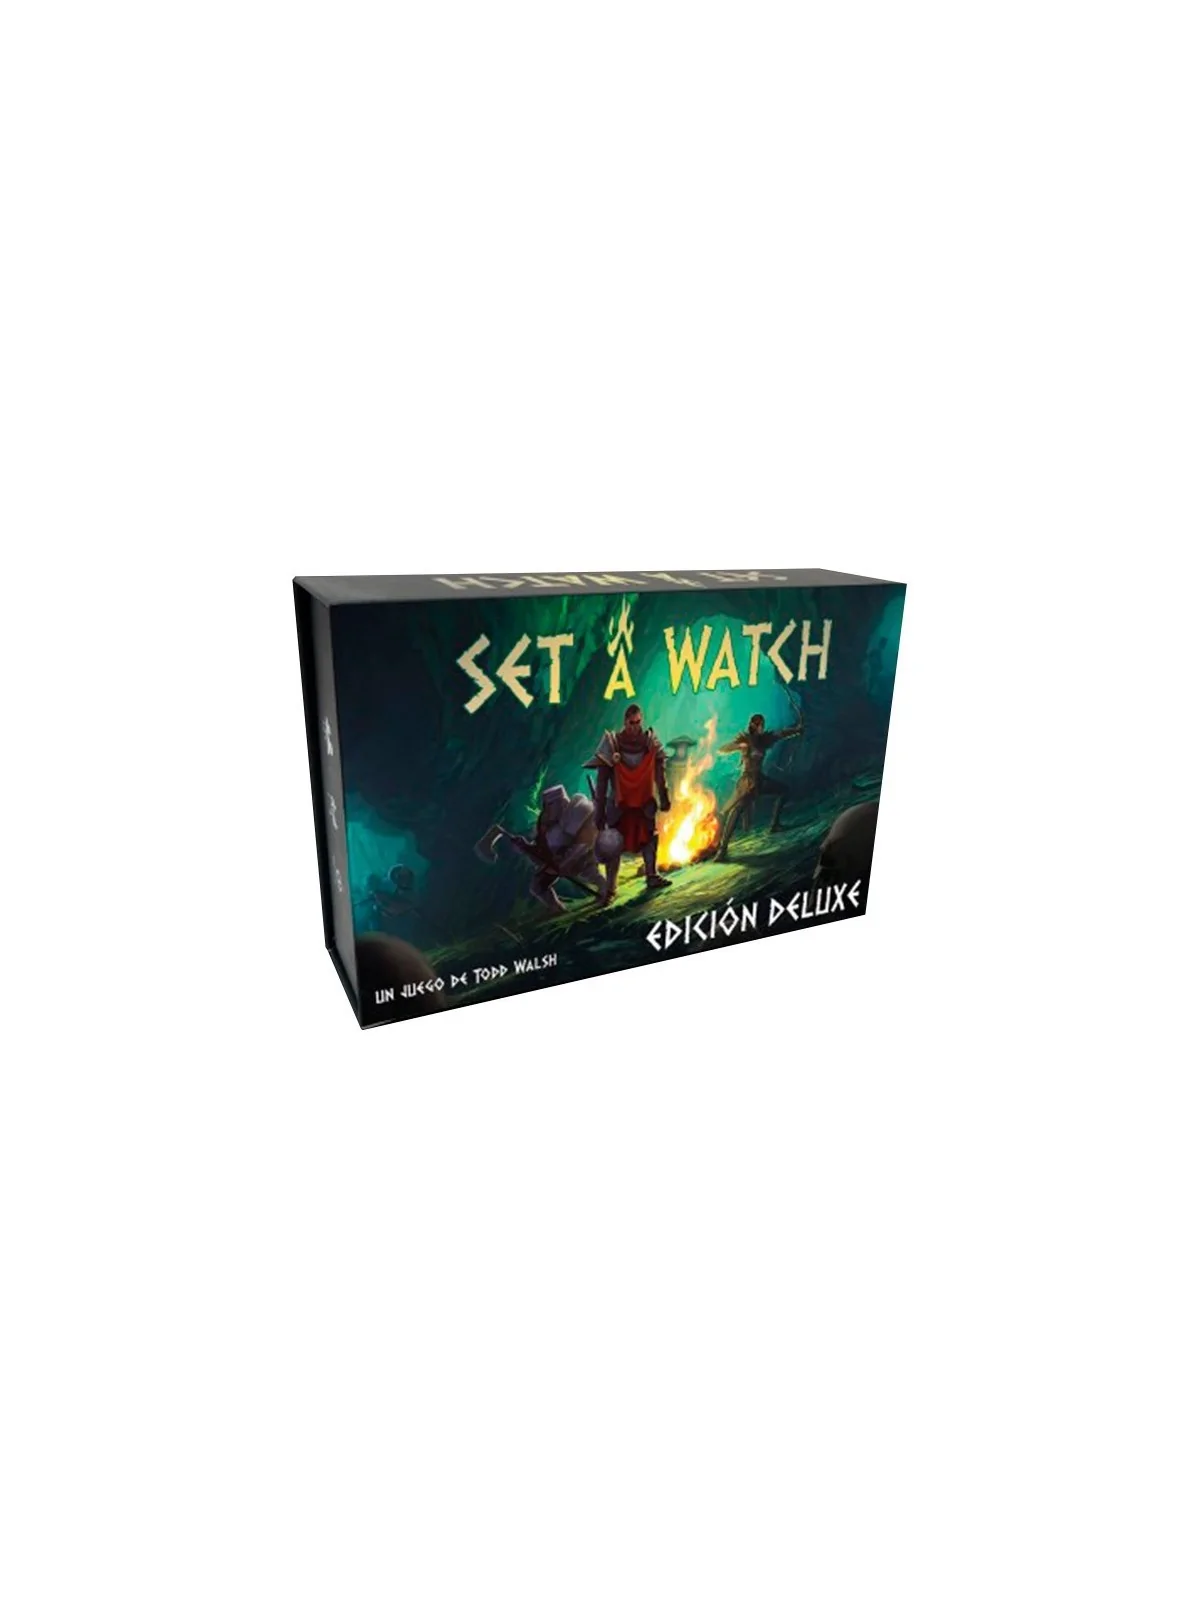 Comprar Set a Watch: Edición Deluxe barato al mejor precio 39,99 € de 